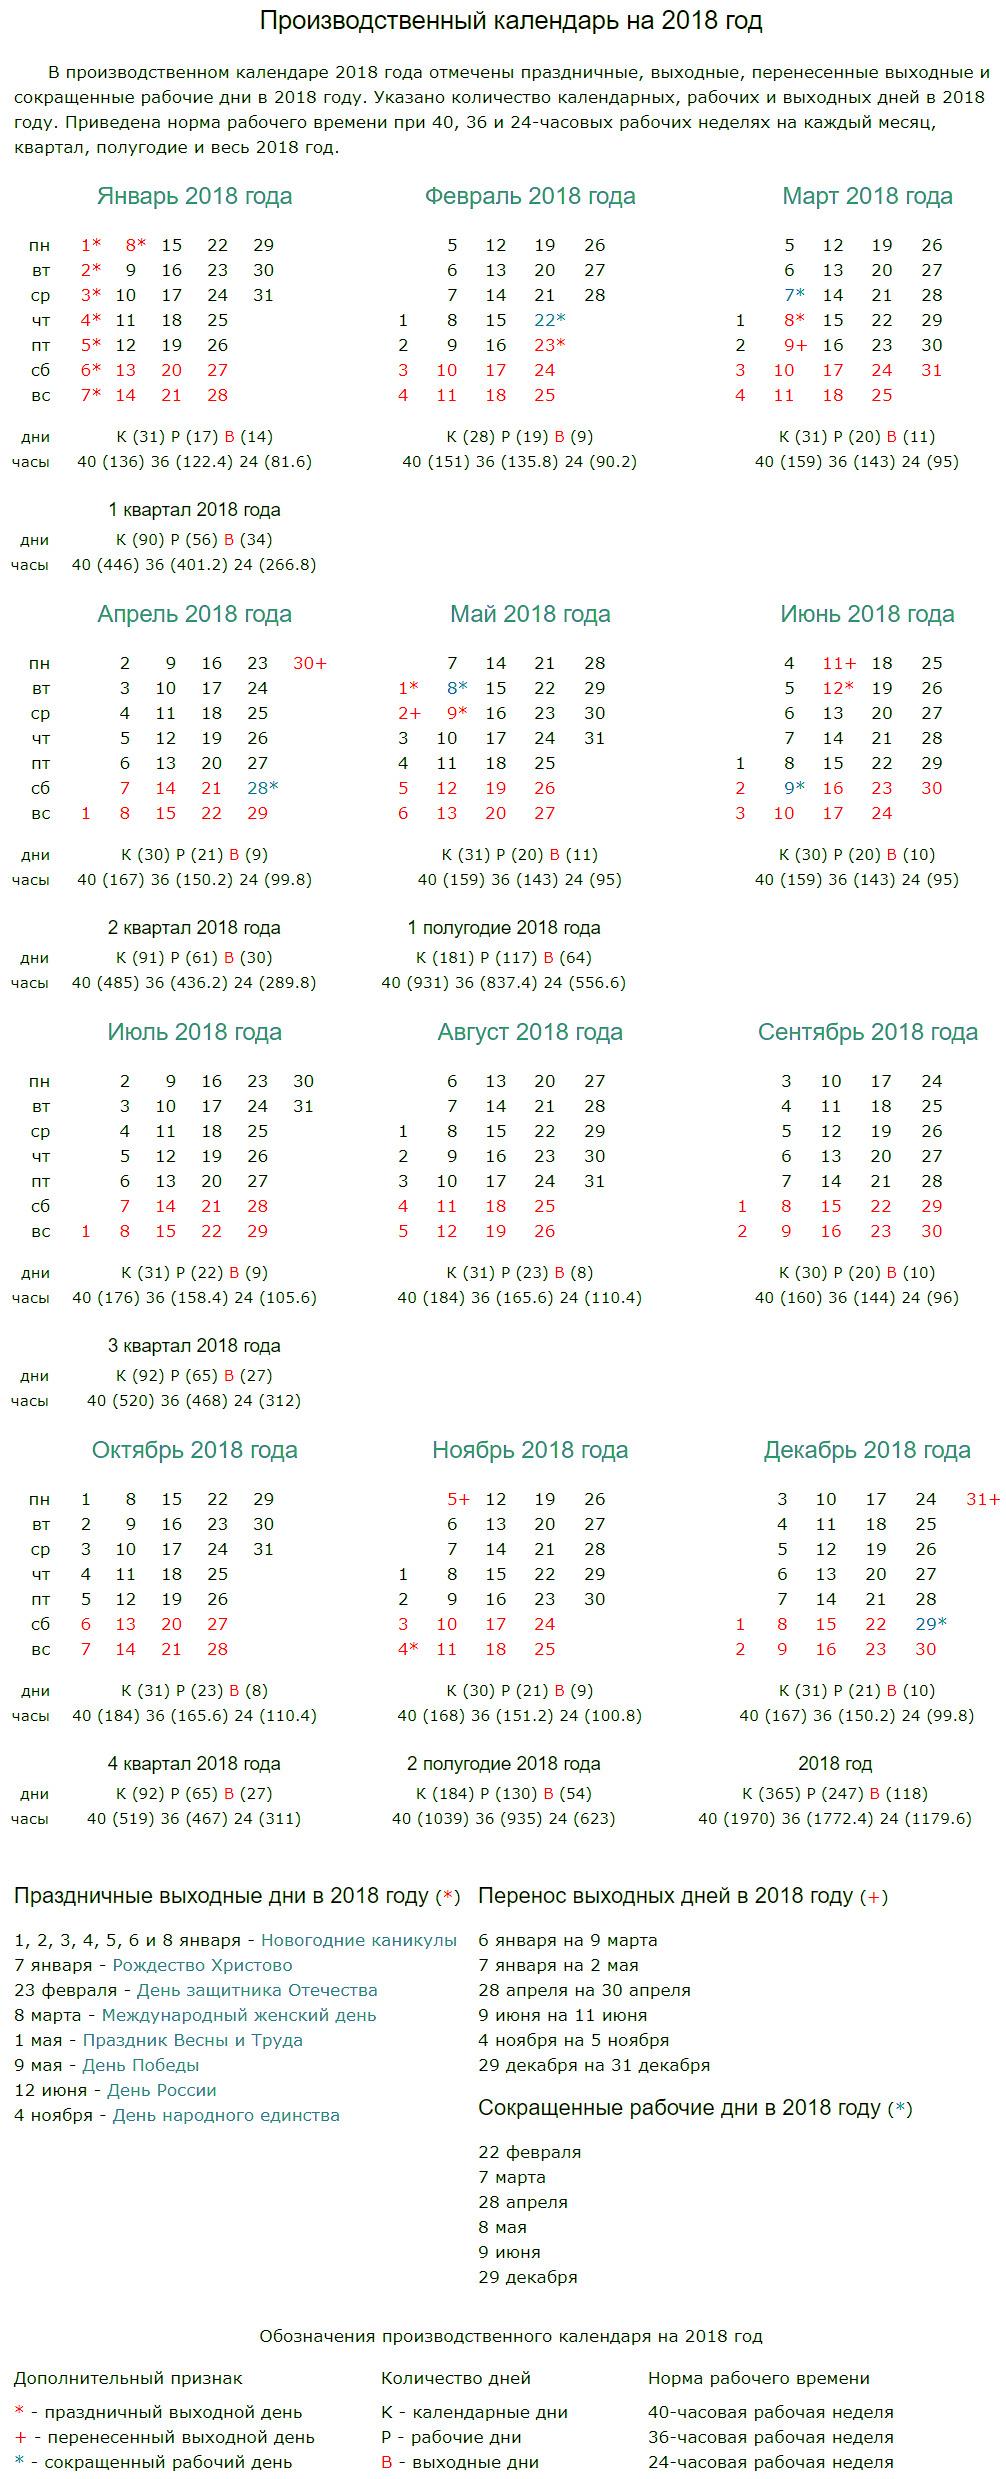 Праздничные, выходные и рабочие дни в производственном календаре на 2018 год